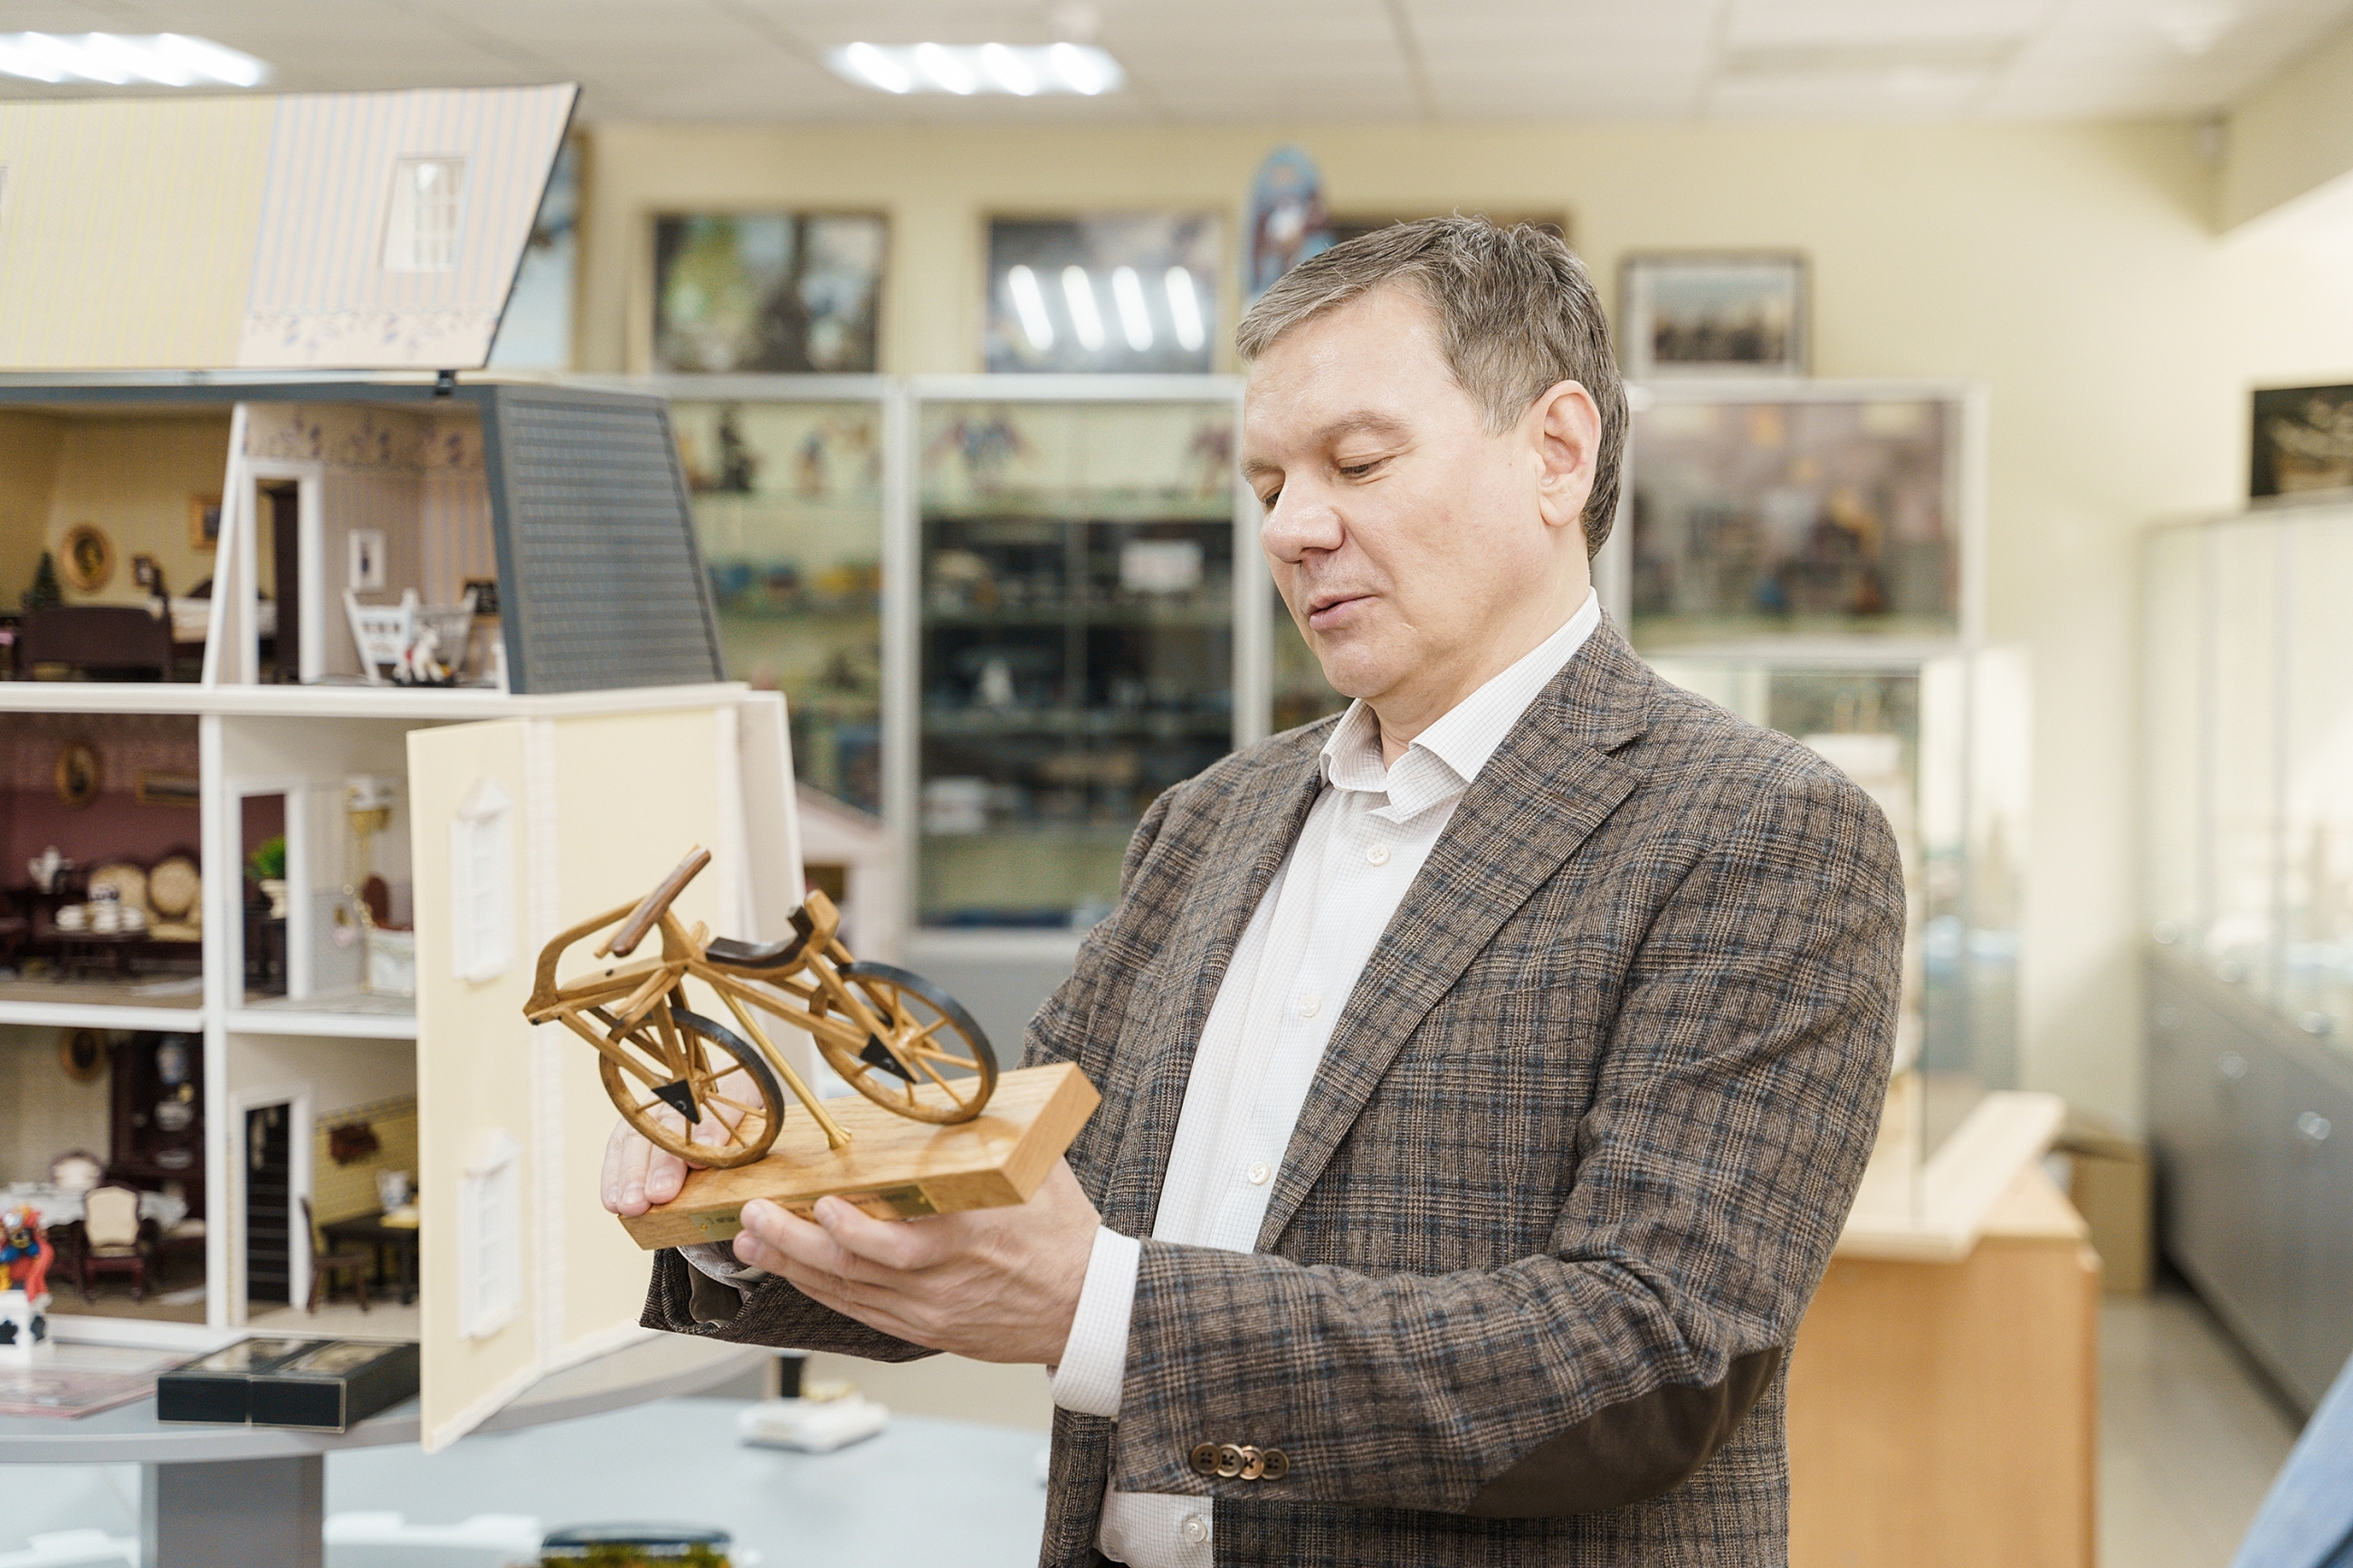 Сергій Моргунов передав Музею моделей транспорту експонат-подарунок від Карлсруе